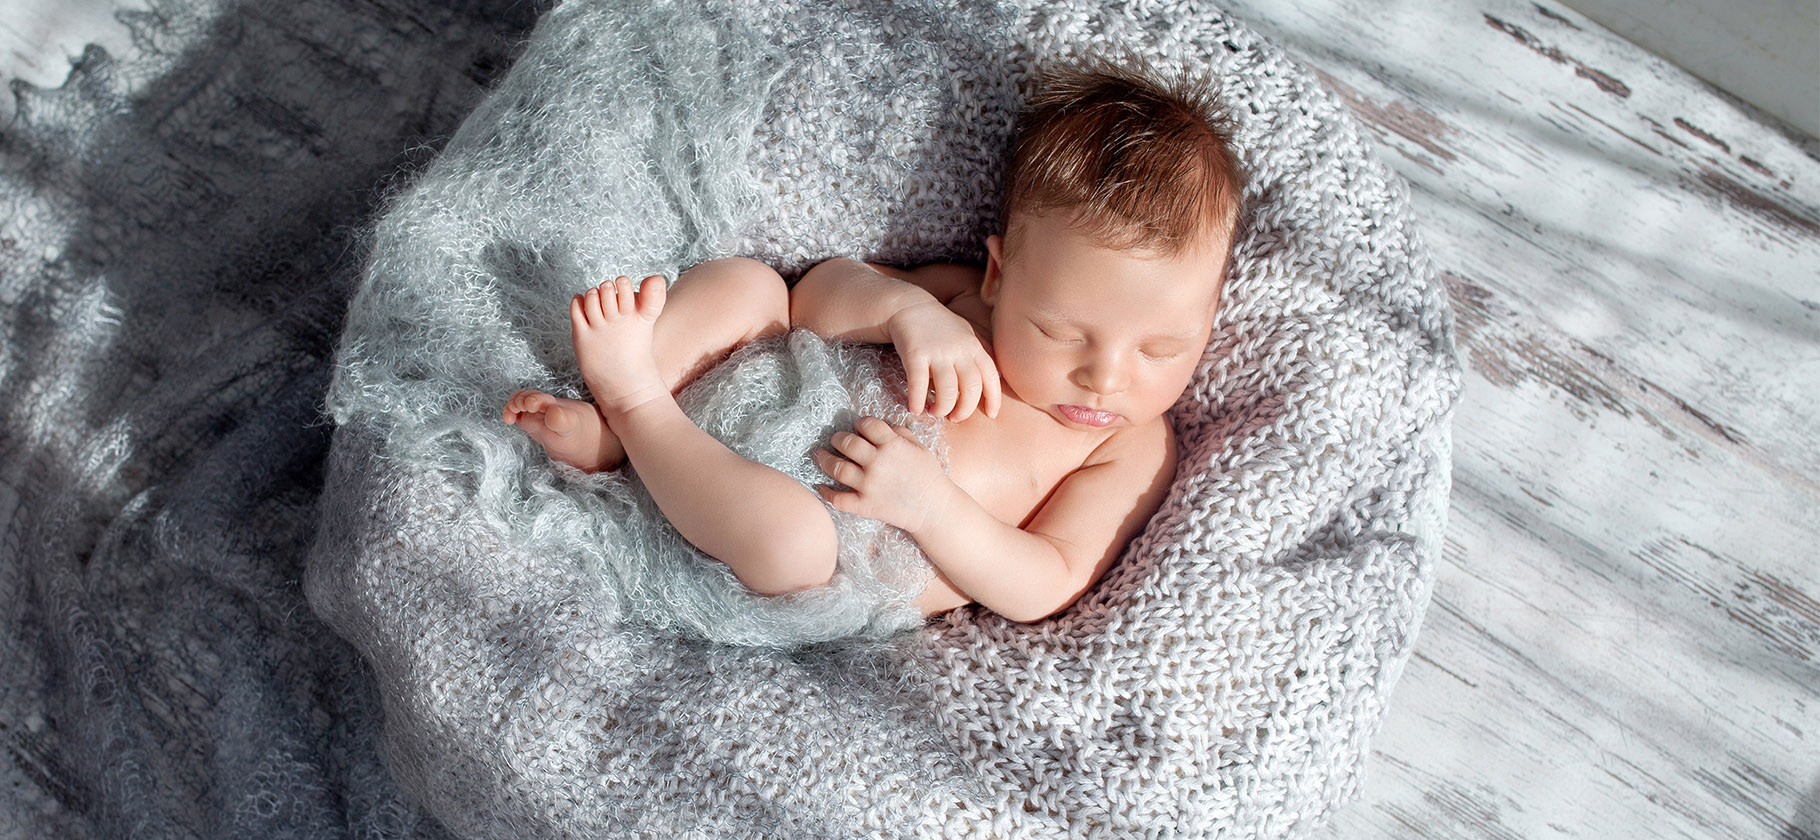 Коконы для новорожденных: какие бывают и как выбрать